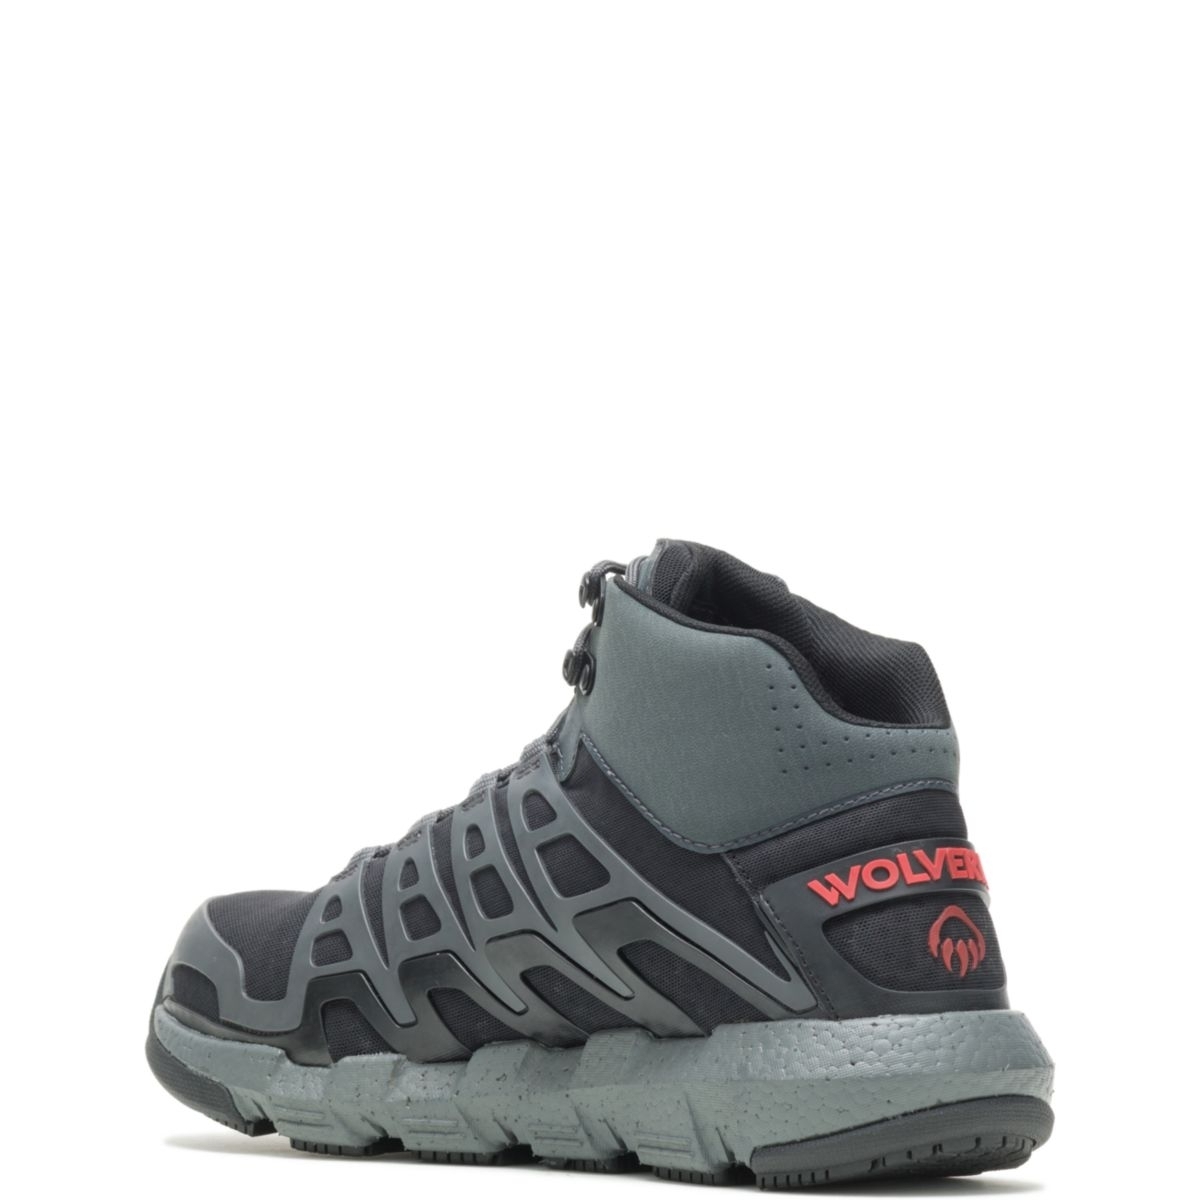 WOLVERINE Men's Rev Vent UltraSpringâ¢ DuraShocksÂ® CarbonMAXÂ® Composite Toe Work Boot Charcoal/Red - W211018 Charcoal/Red - Charcoal/Red, 12